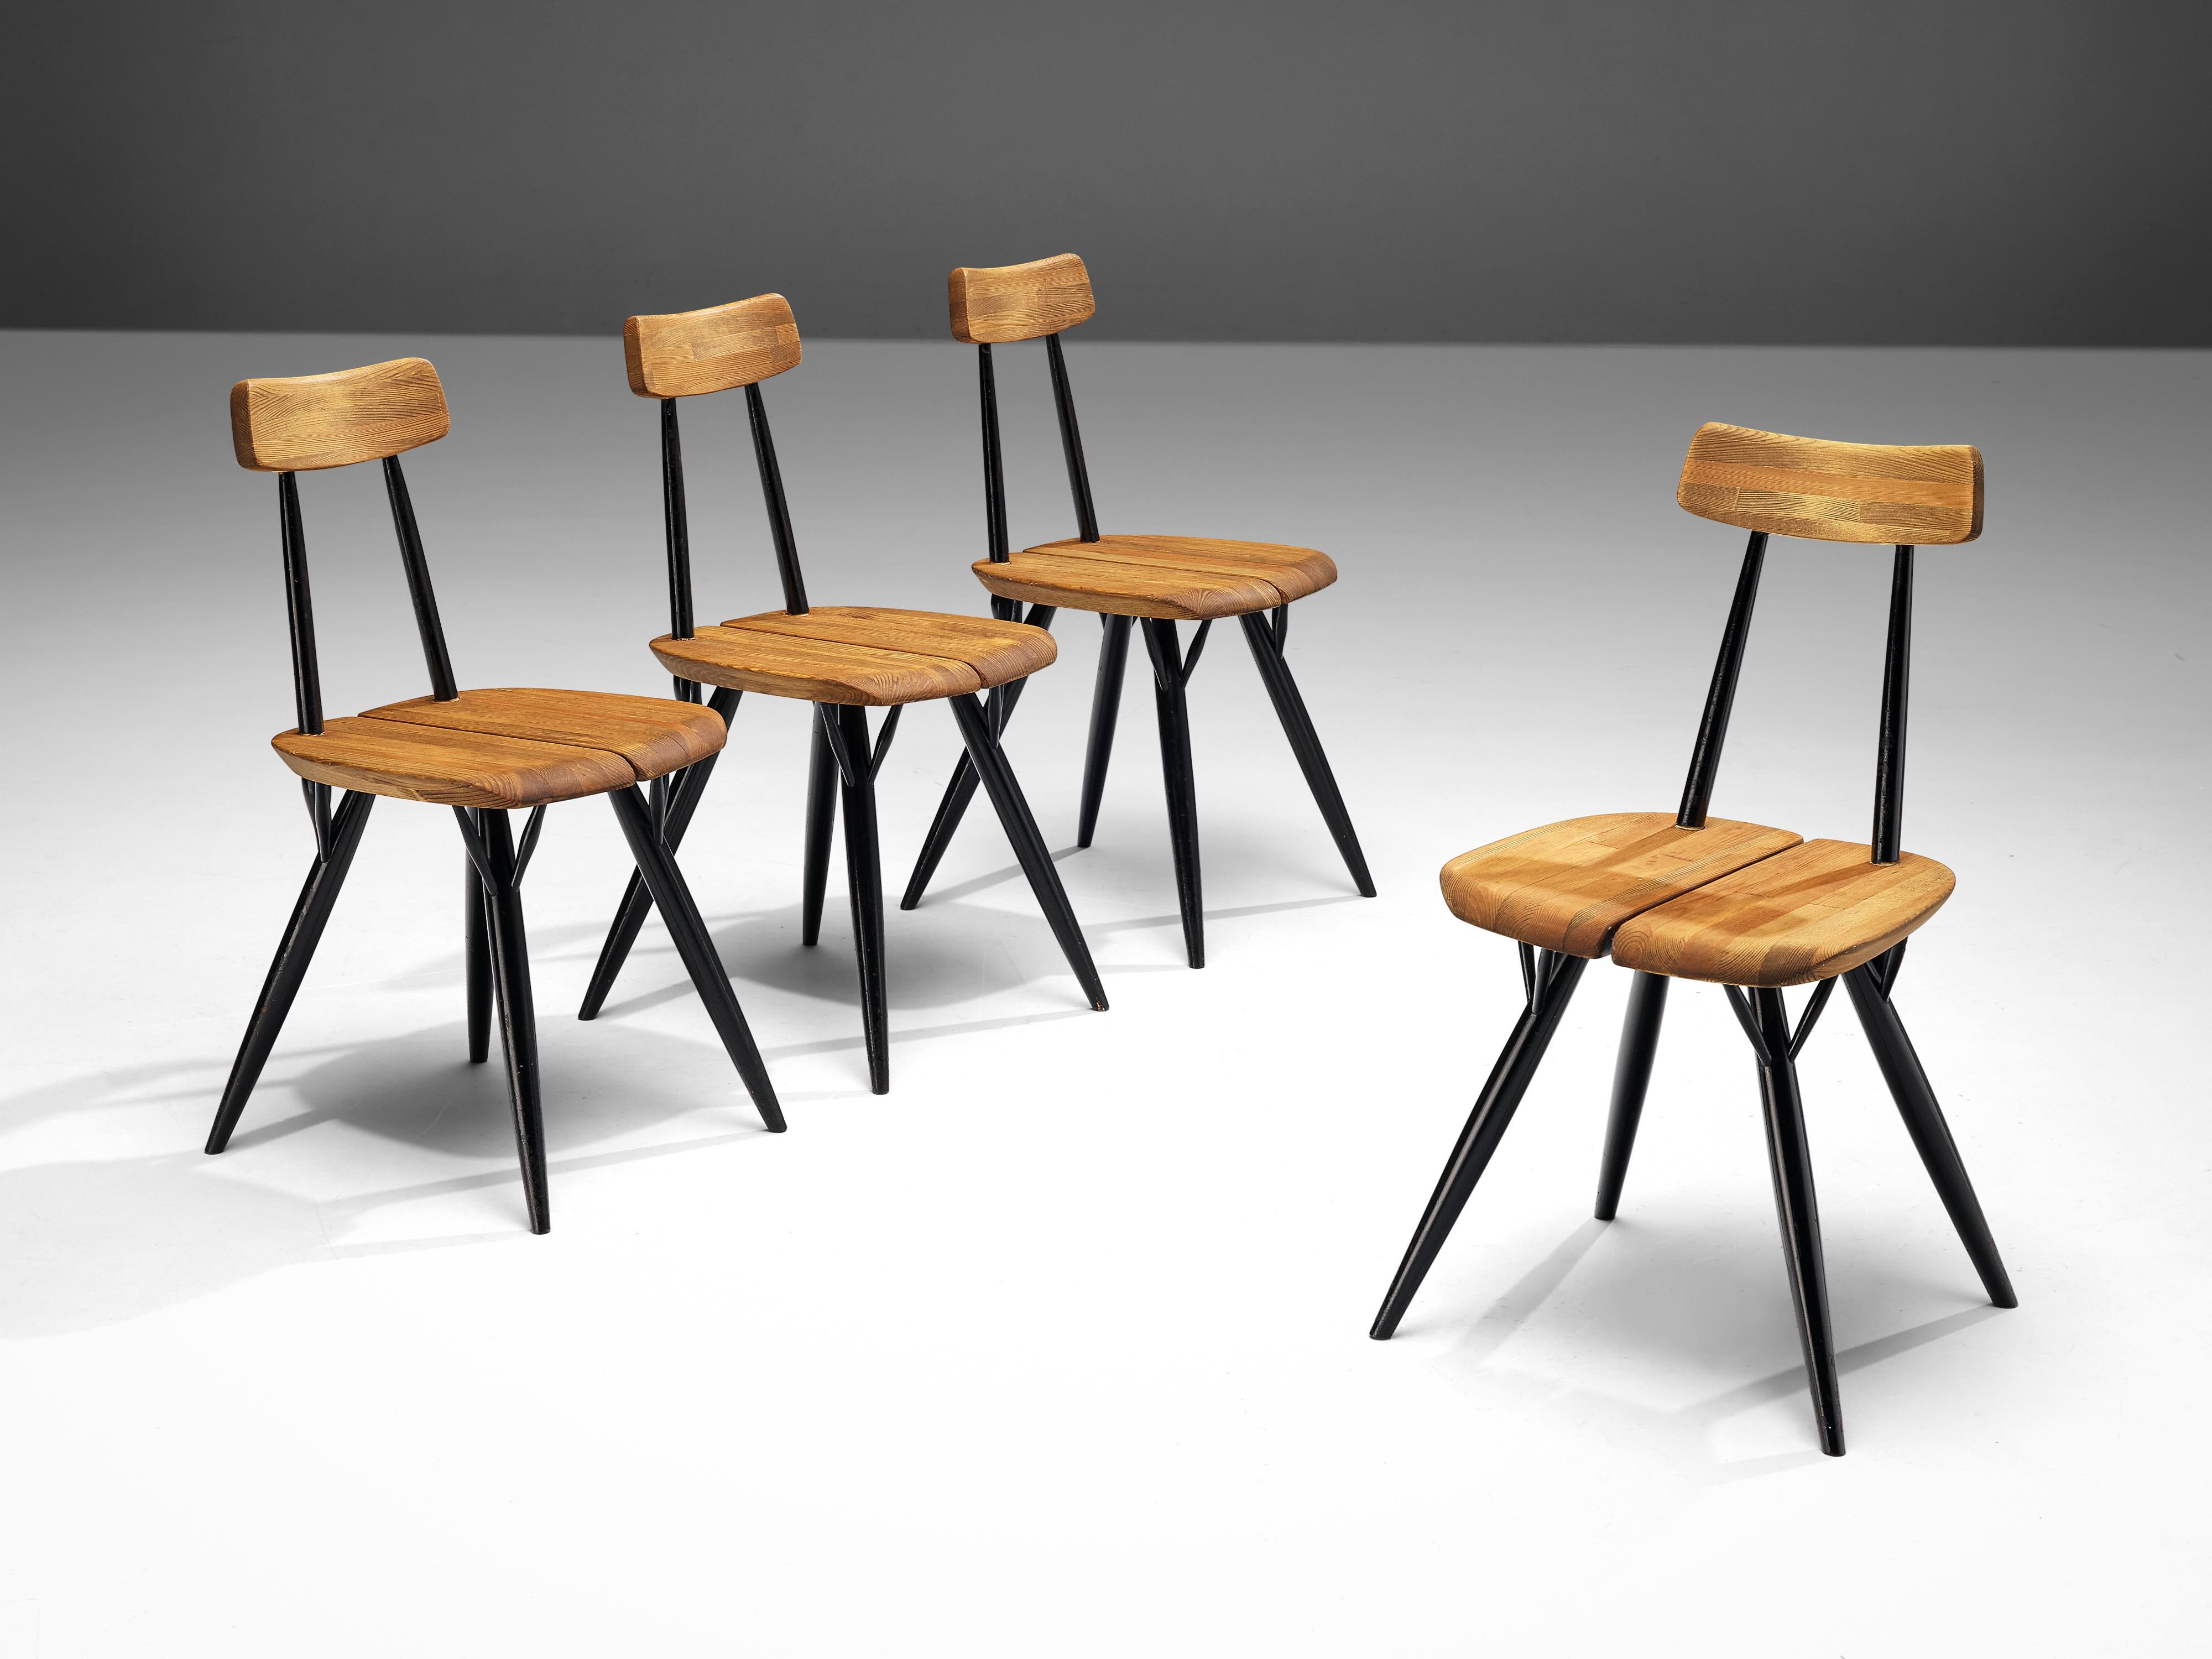 Ilmari Tapiovaara pour Laukaan Puu, ensemble de quatre chaises de salle à manger 'Pirkka', hêtre, pin, Finlande, design 1955

Cet ensemble de chaises 